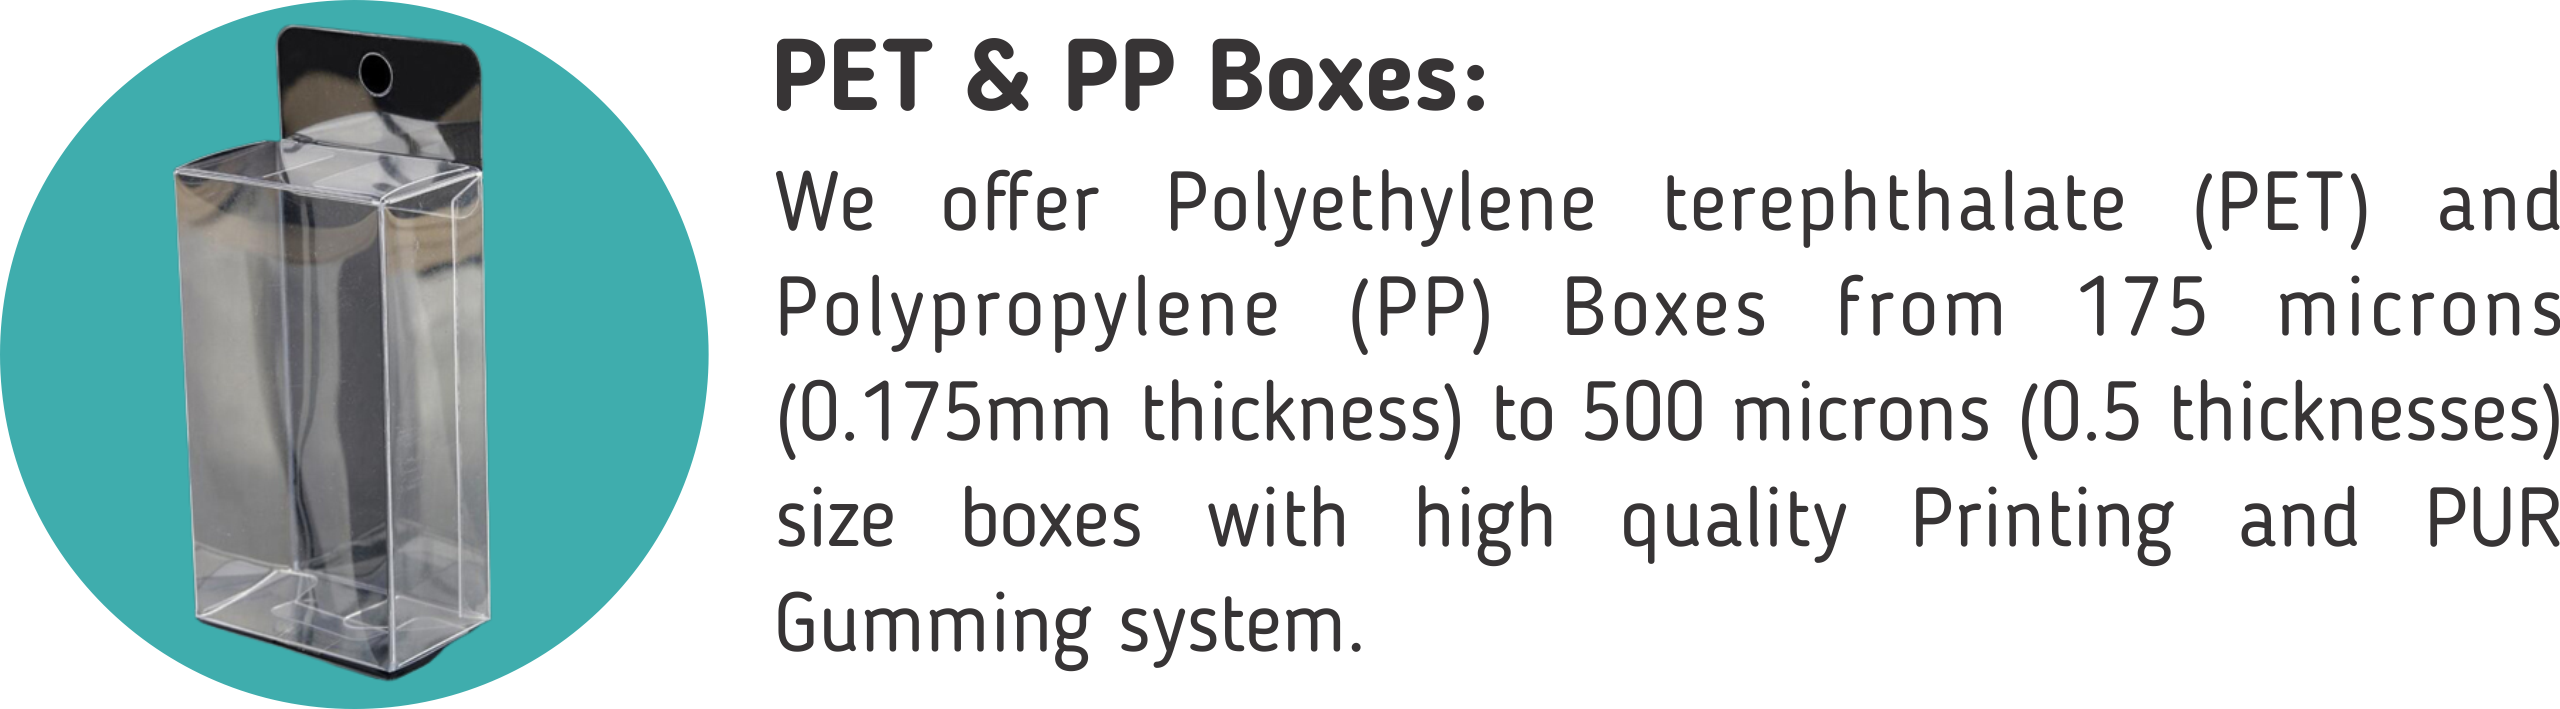 pet & pp boxes